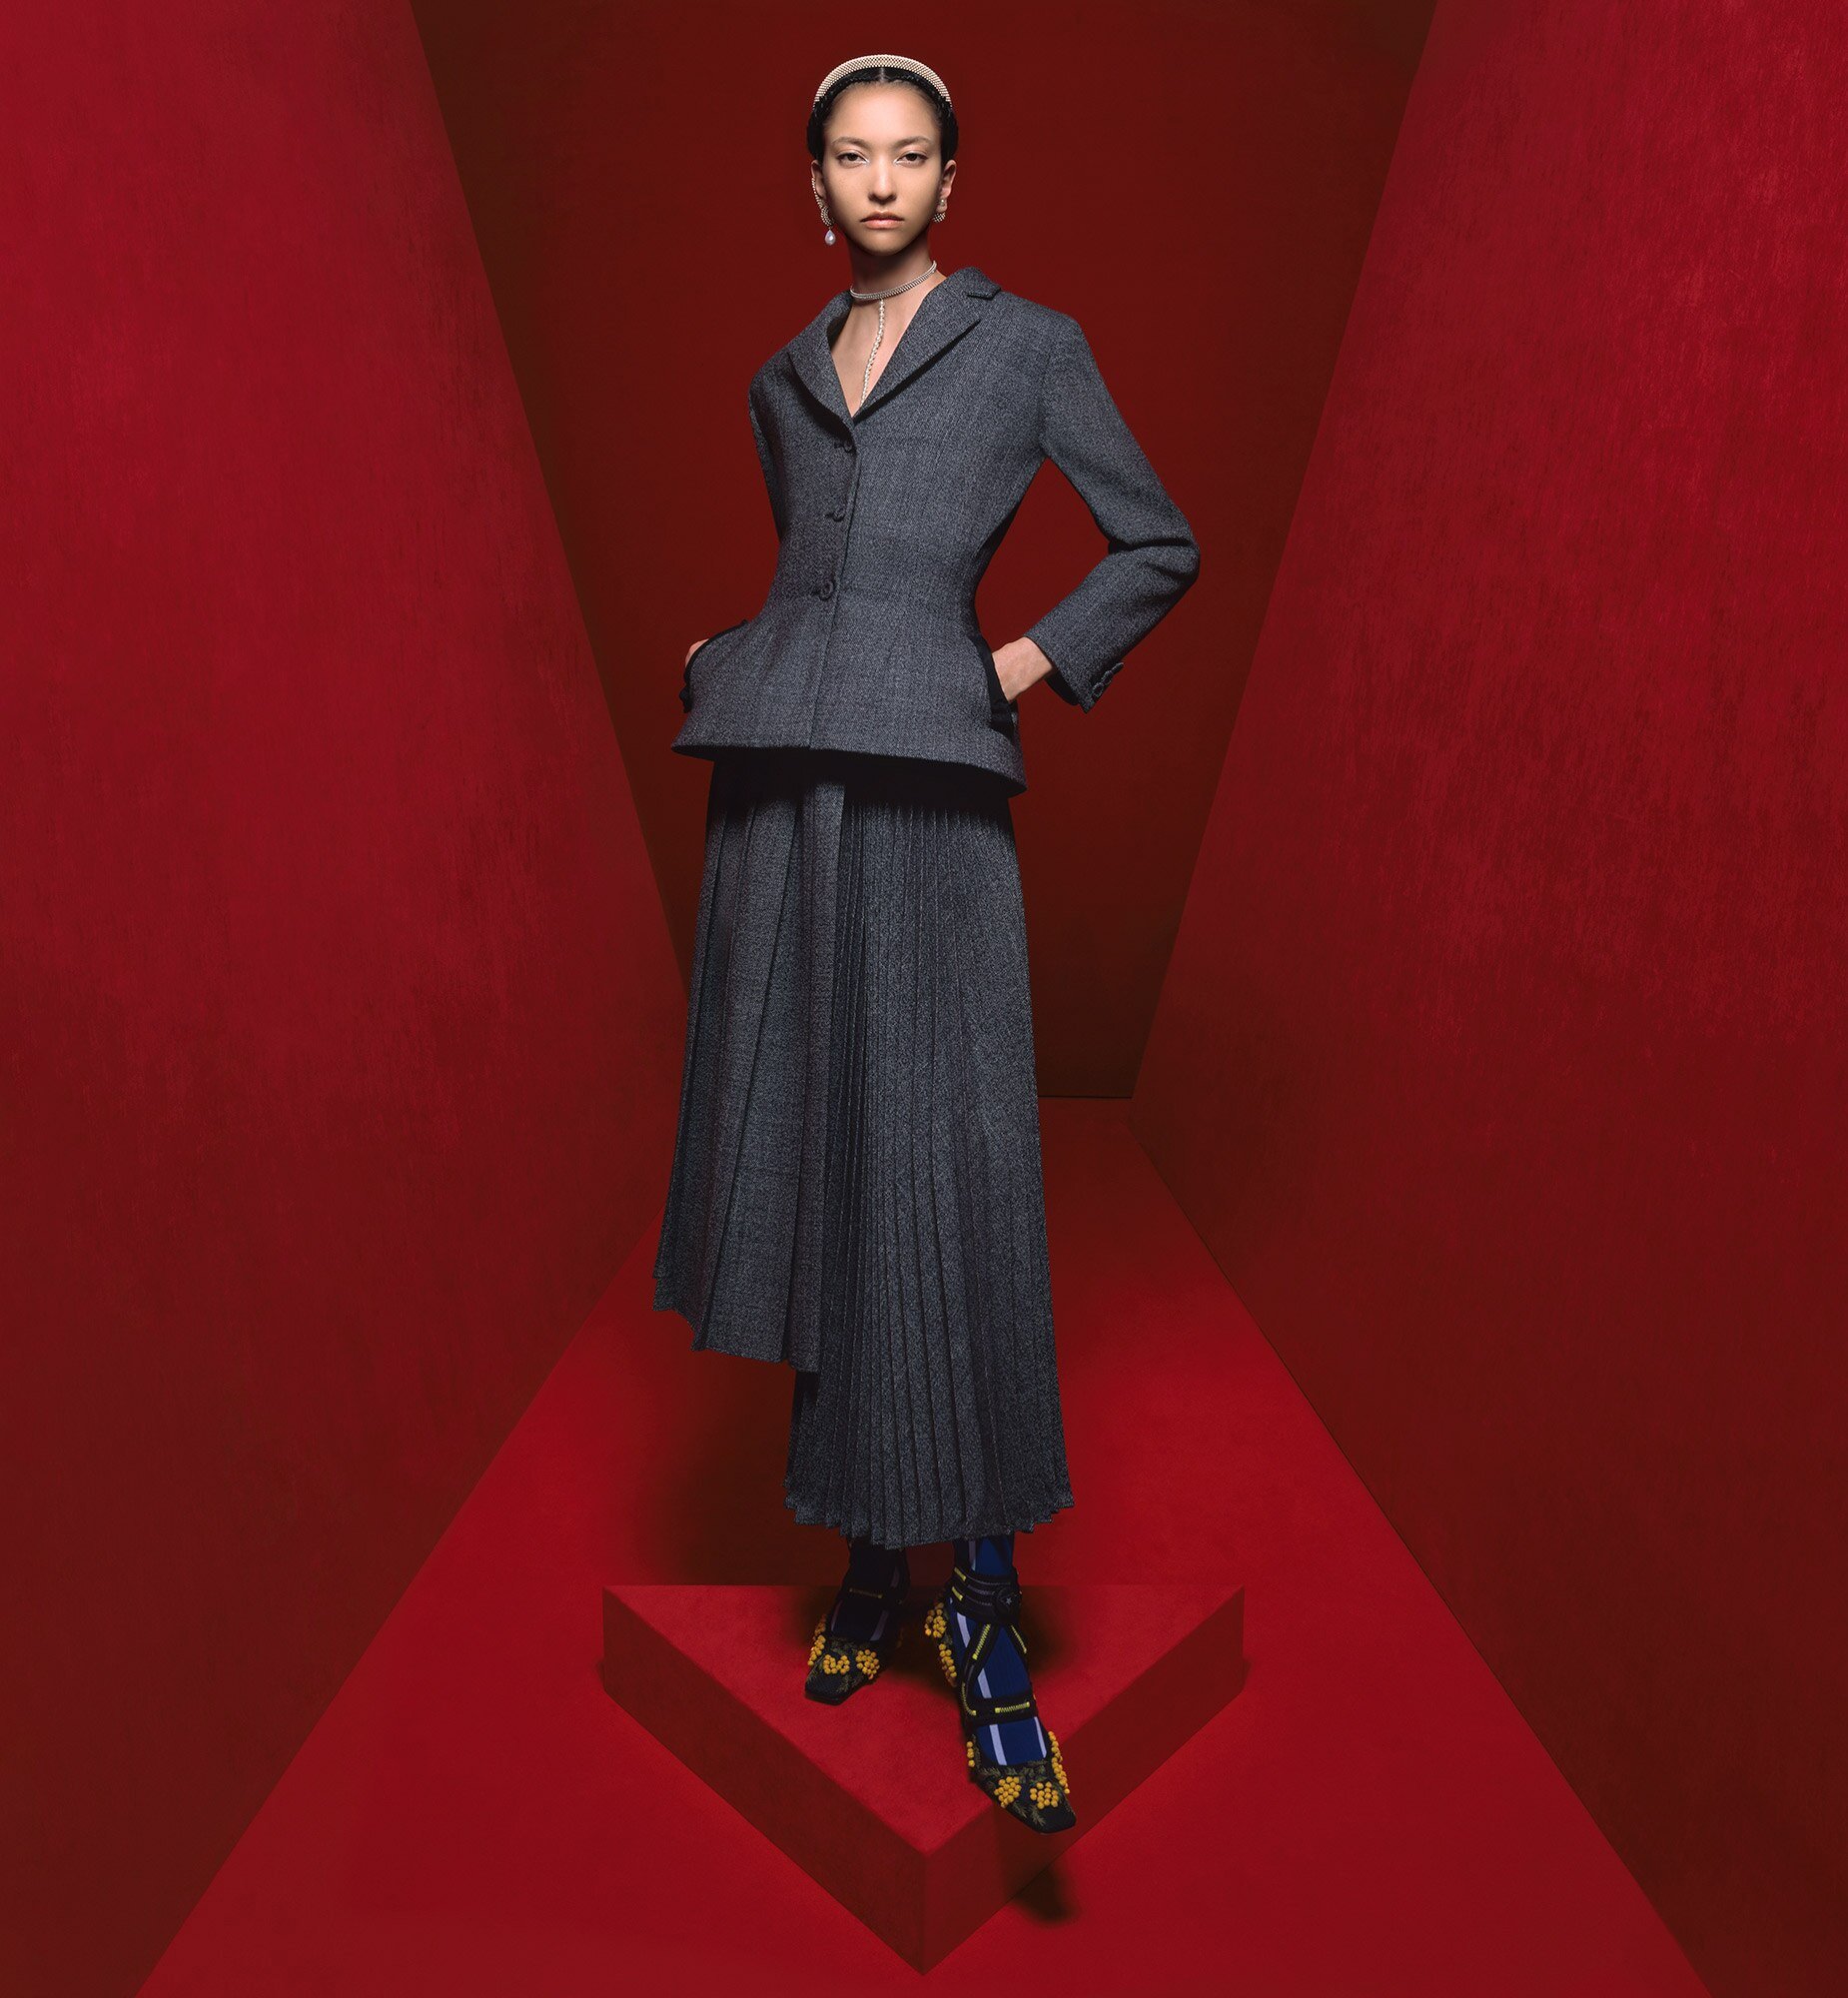 Dior-Fall-2022-Campaign-by Grigitte-Niedermair (23).jpg